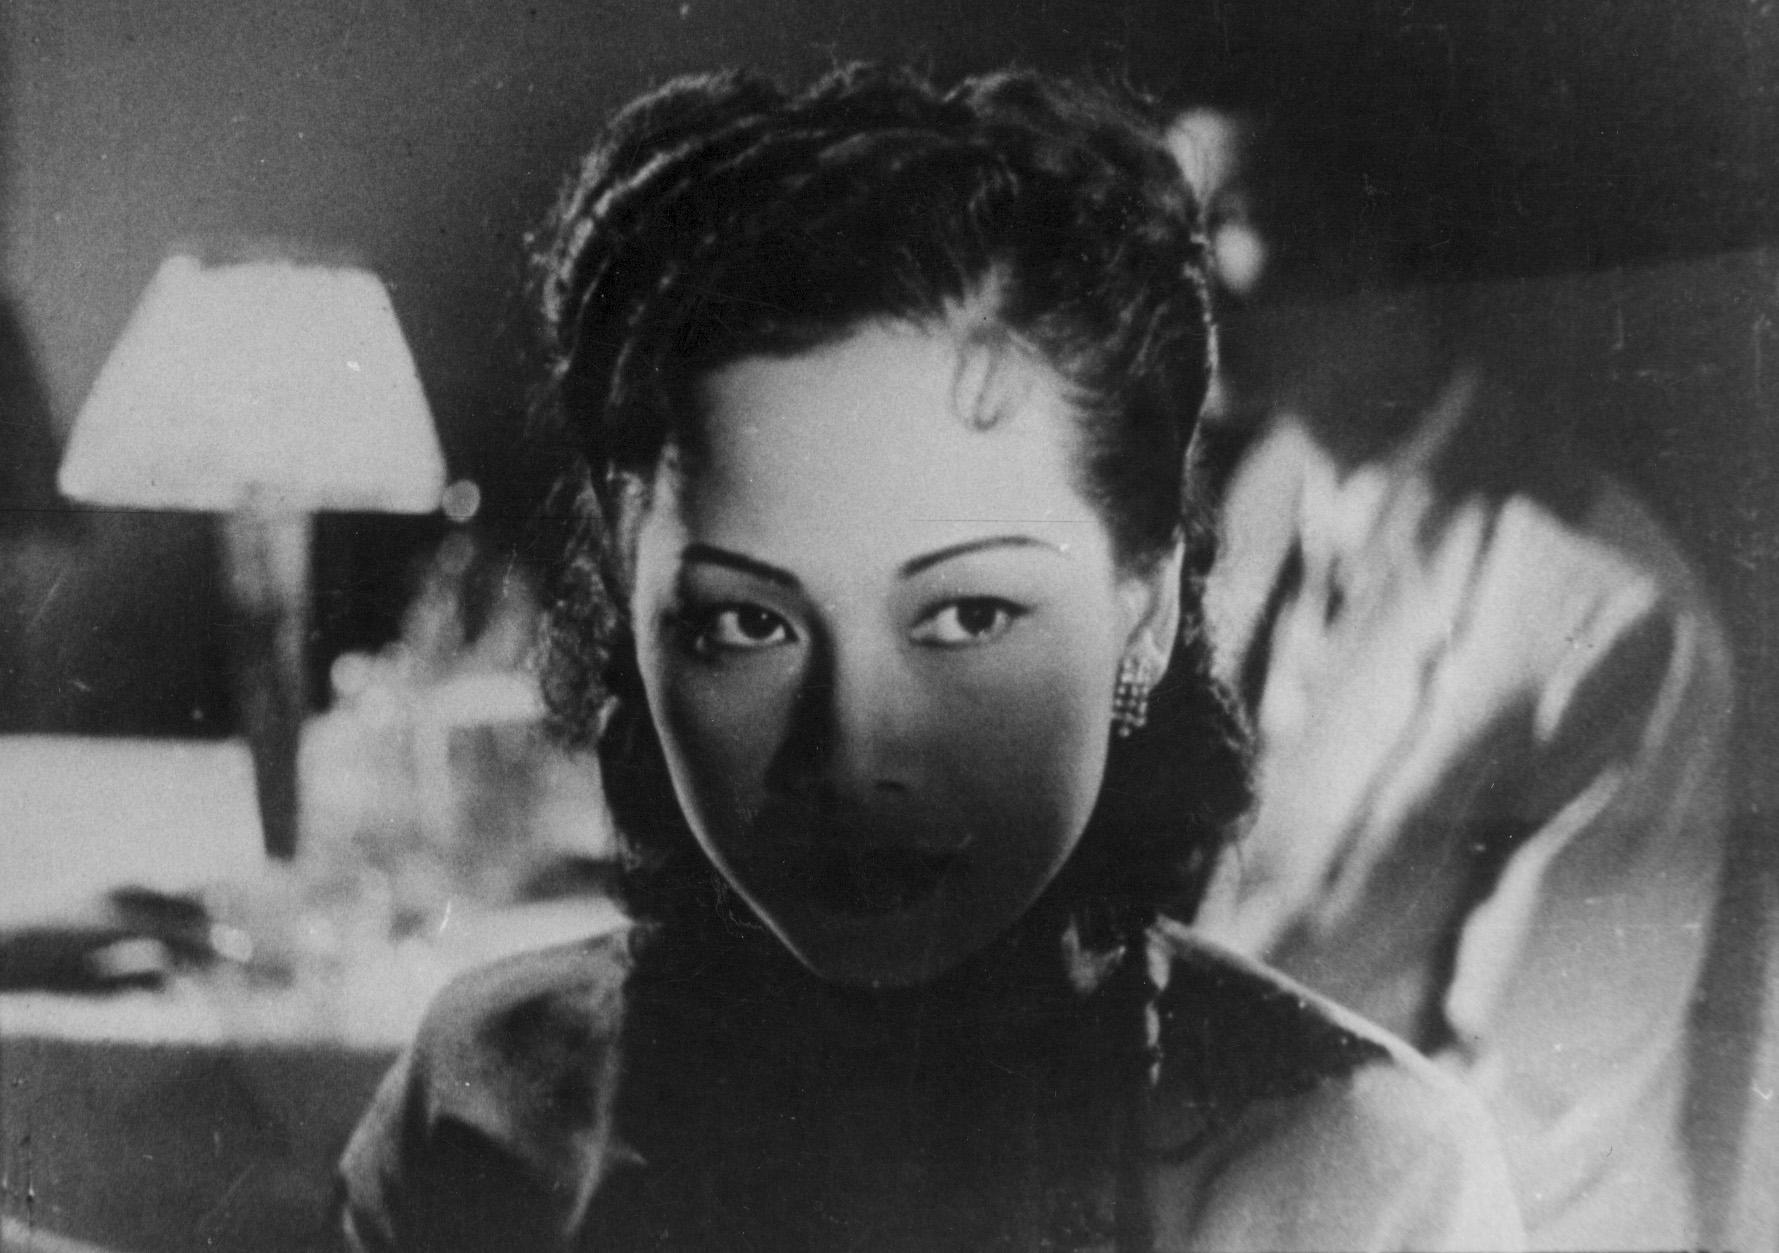 康乐及文化事务署香港电影资料馆由七月至十二月，逢星期五上午十一时的「影画早晨」节目，将精选放映18出芳艳芬经典作品，让戏迷重温这位「花旦王」精湛演技。图示《红菱血（下集）》（1951）剧照。